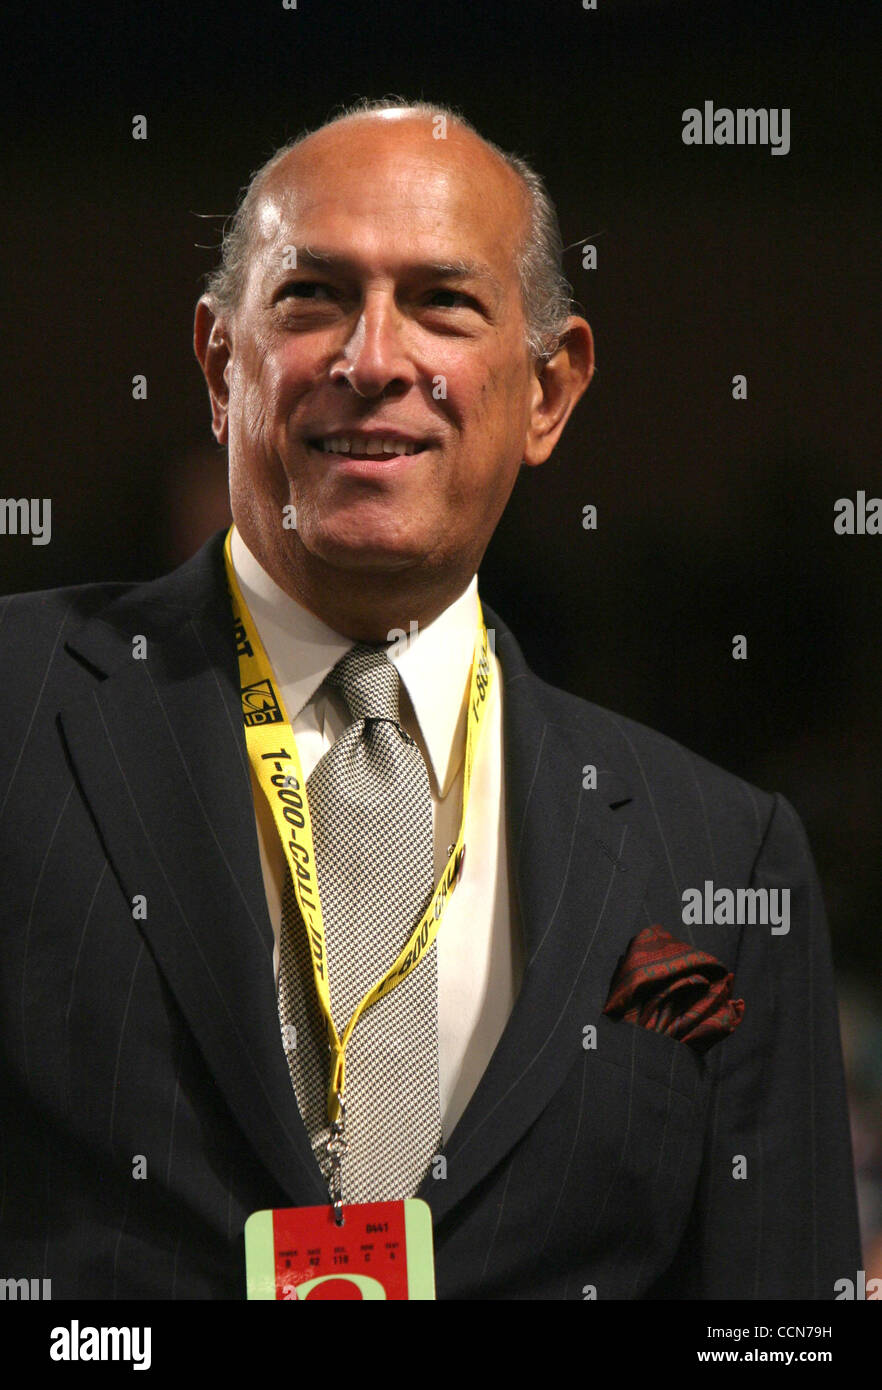 Aug 31, 2004 ; New York, NY, USA ; Designer OSCAR DE LA RENTA au deuxième jour de la Convention nationale républicaine de 2004 tenue au Madison Square Garden. Banque D'Images